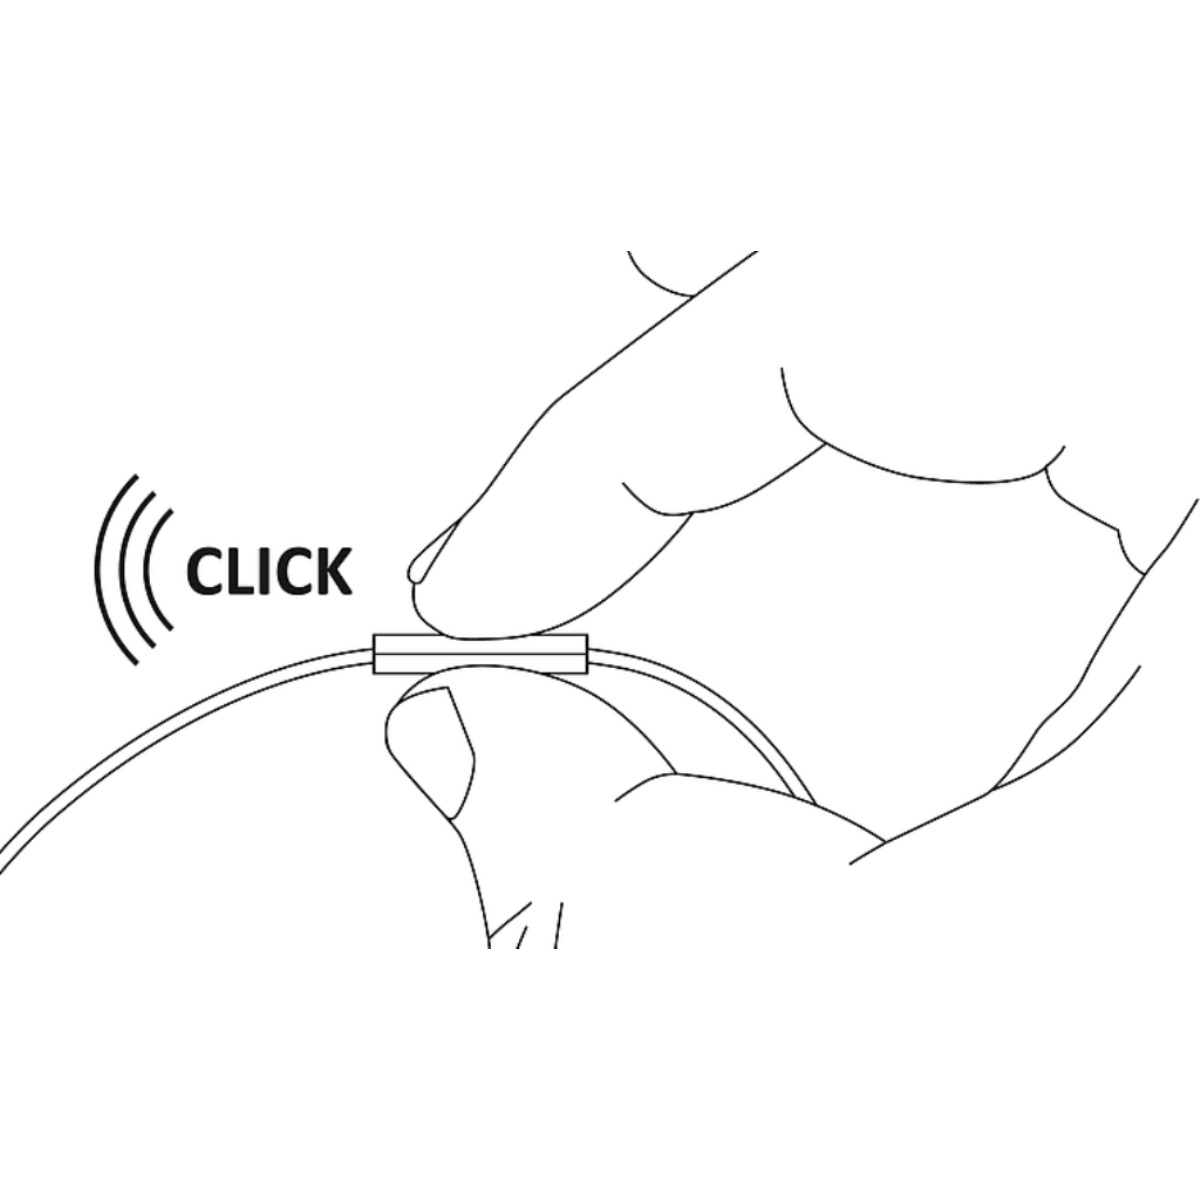 CELLUX Headset Stereo schwarz schwarz Headset In-Ear In-Ear